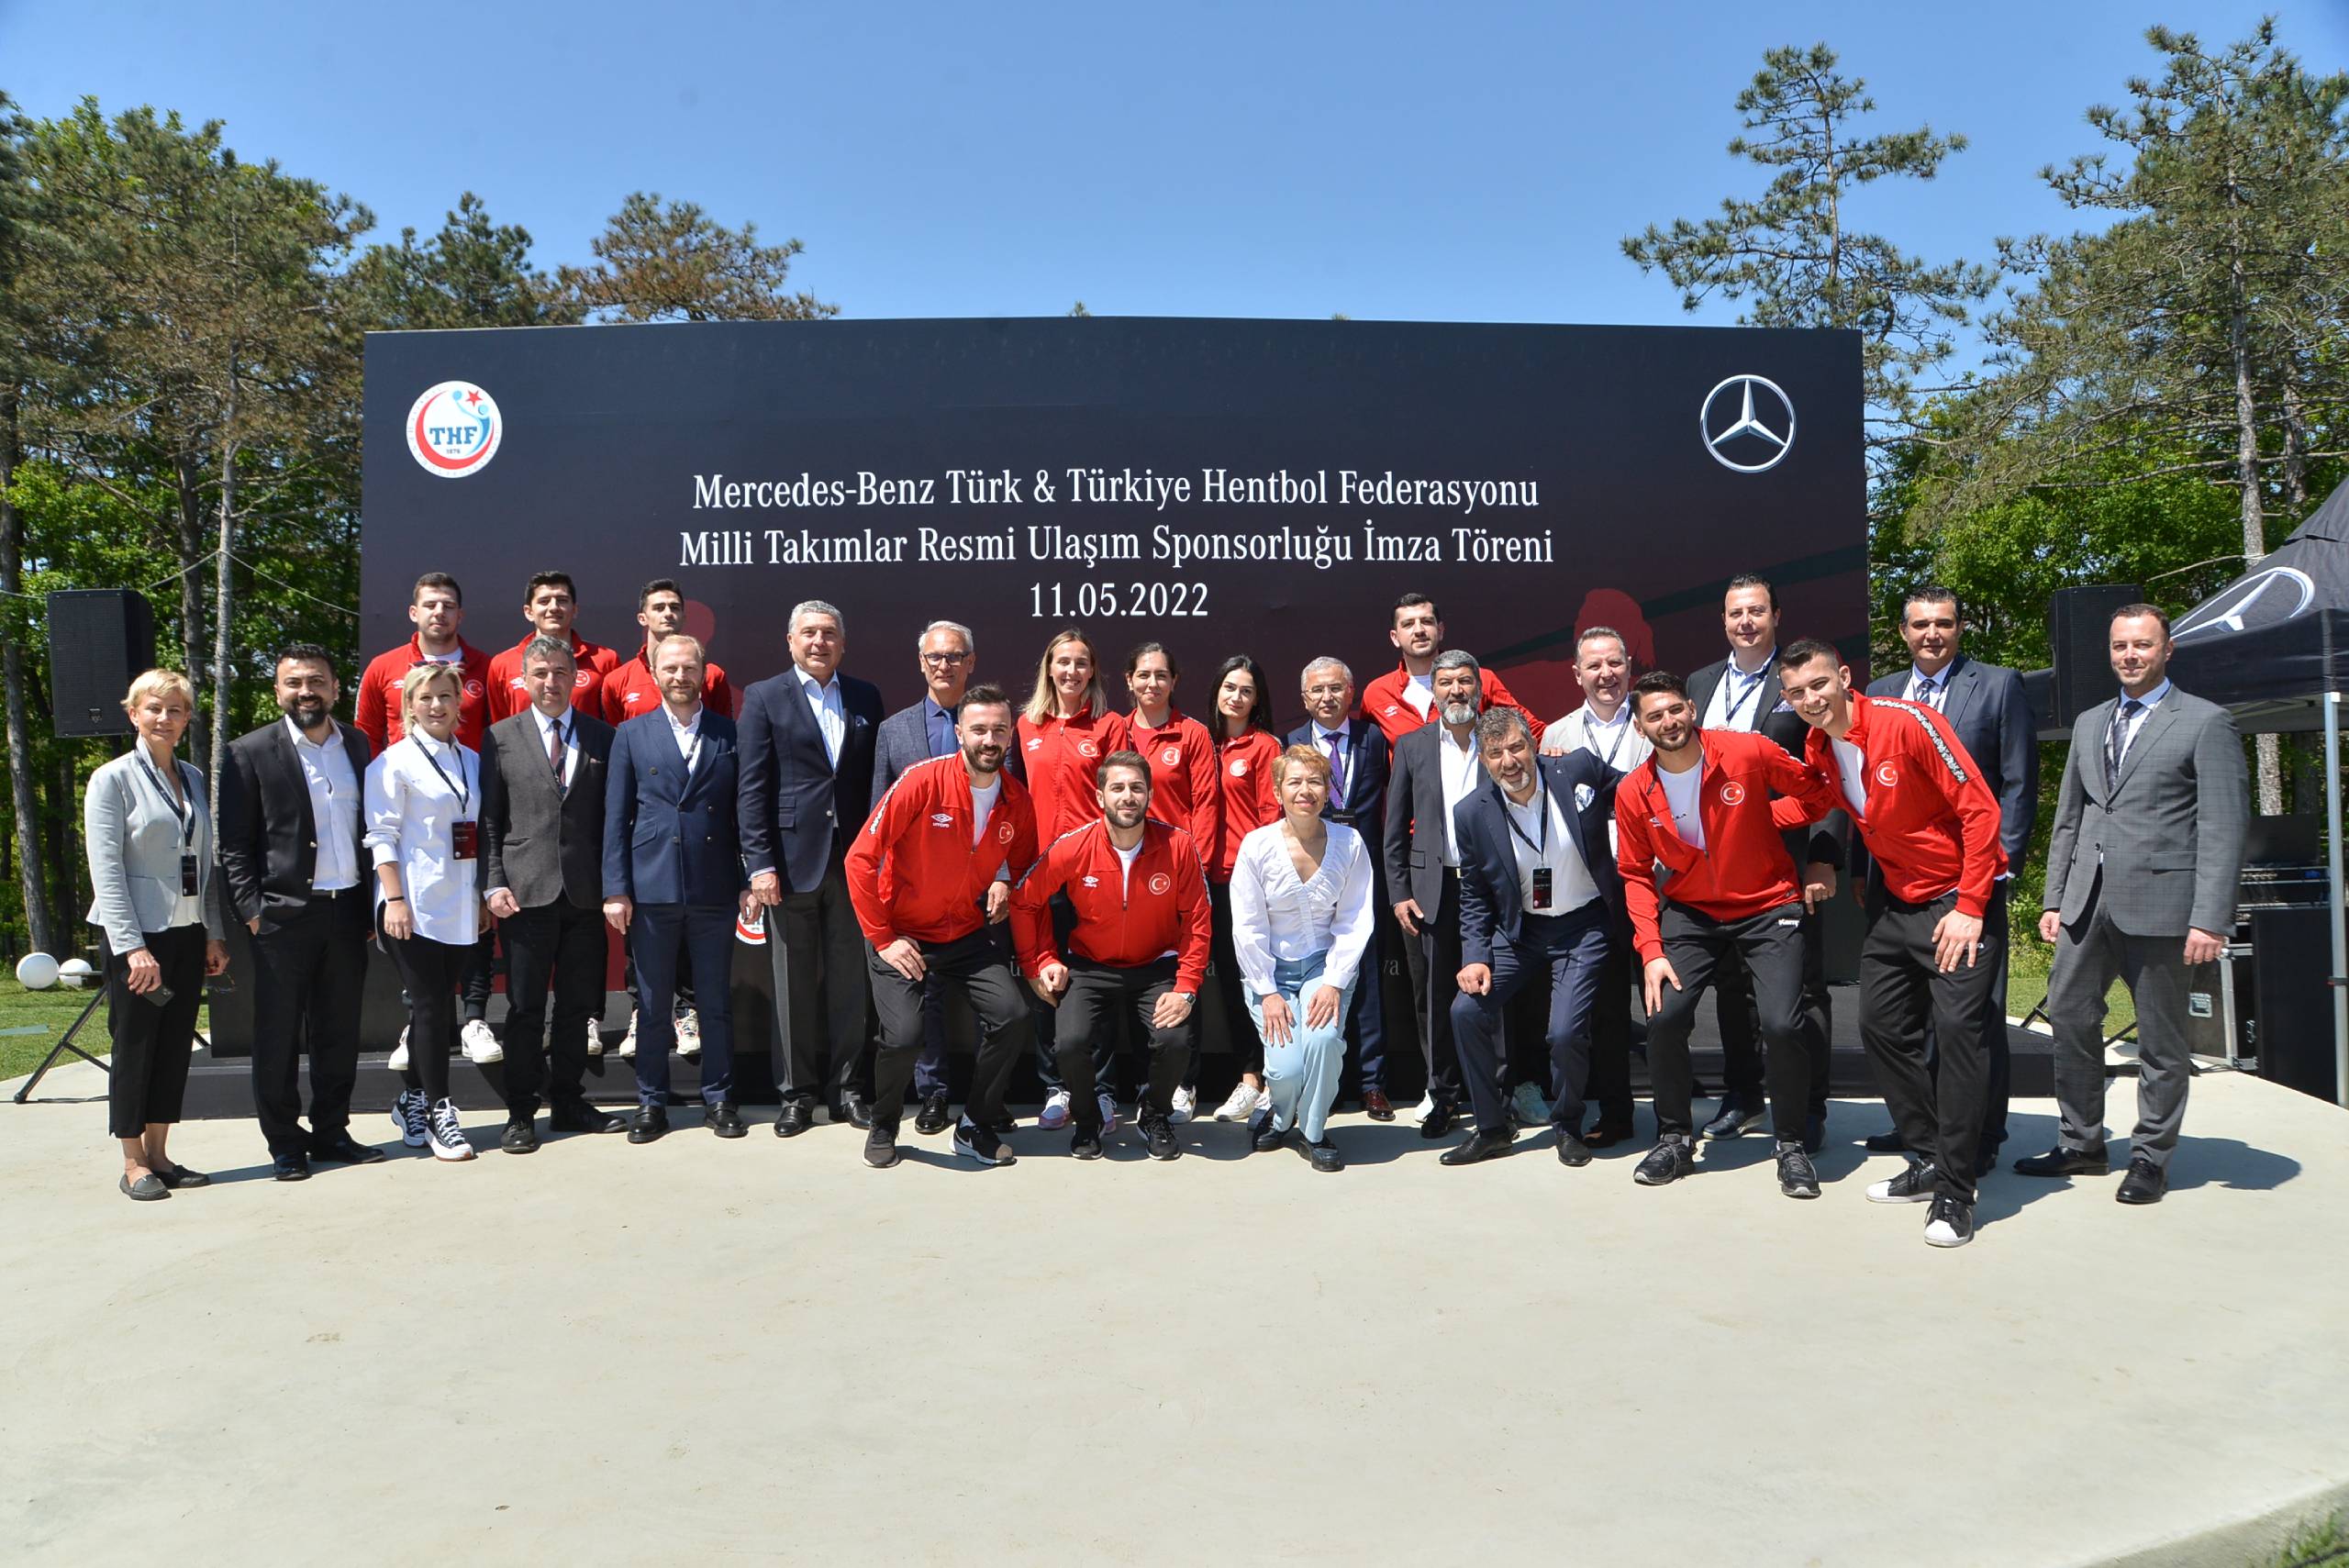 Mercedes-Benz Türk,Türkiye Hentbol Federasyonu Milli Takımlar resmi ulaşım sponsorluğu ile spora verdiği desteği sürdürüyor